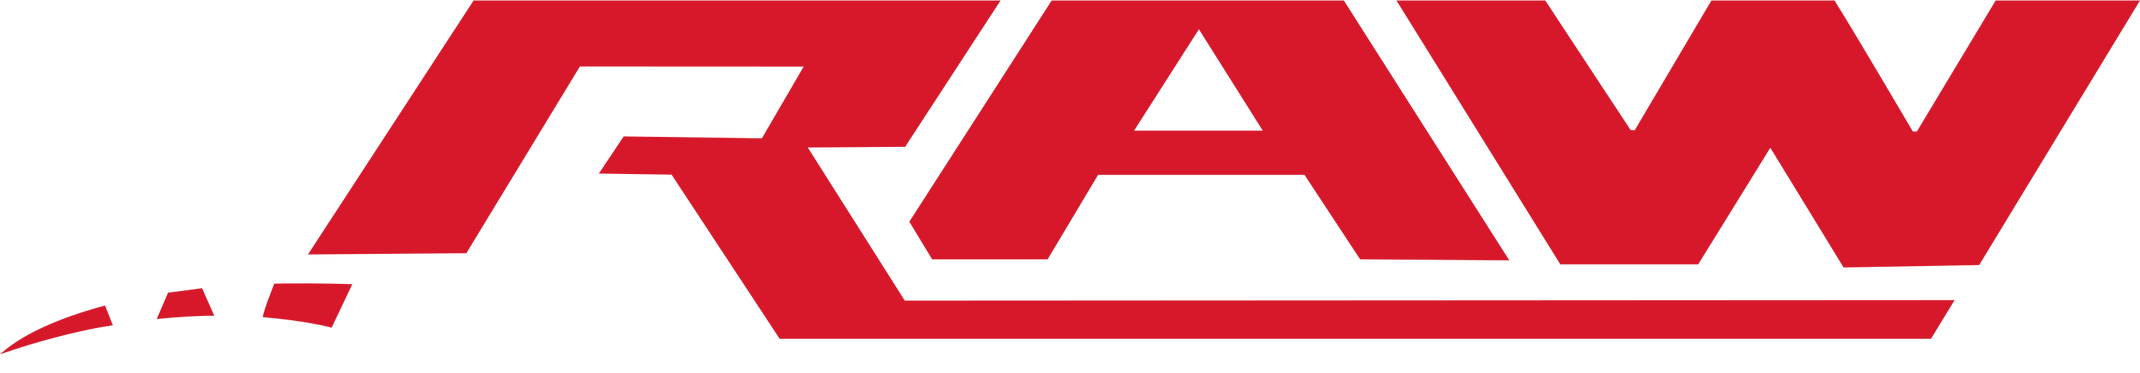 WWE Raw (2012-2016) Logo